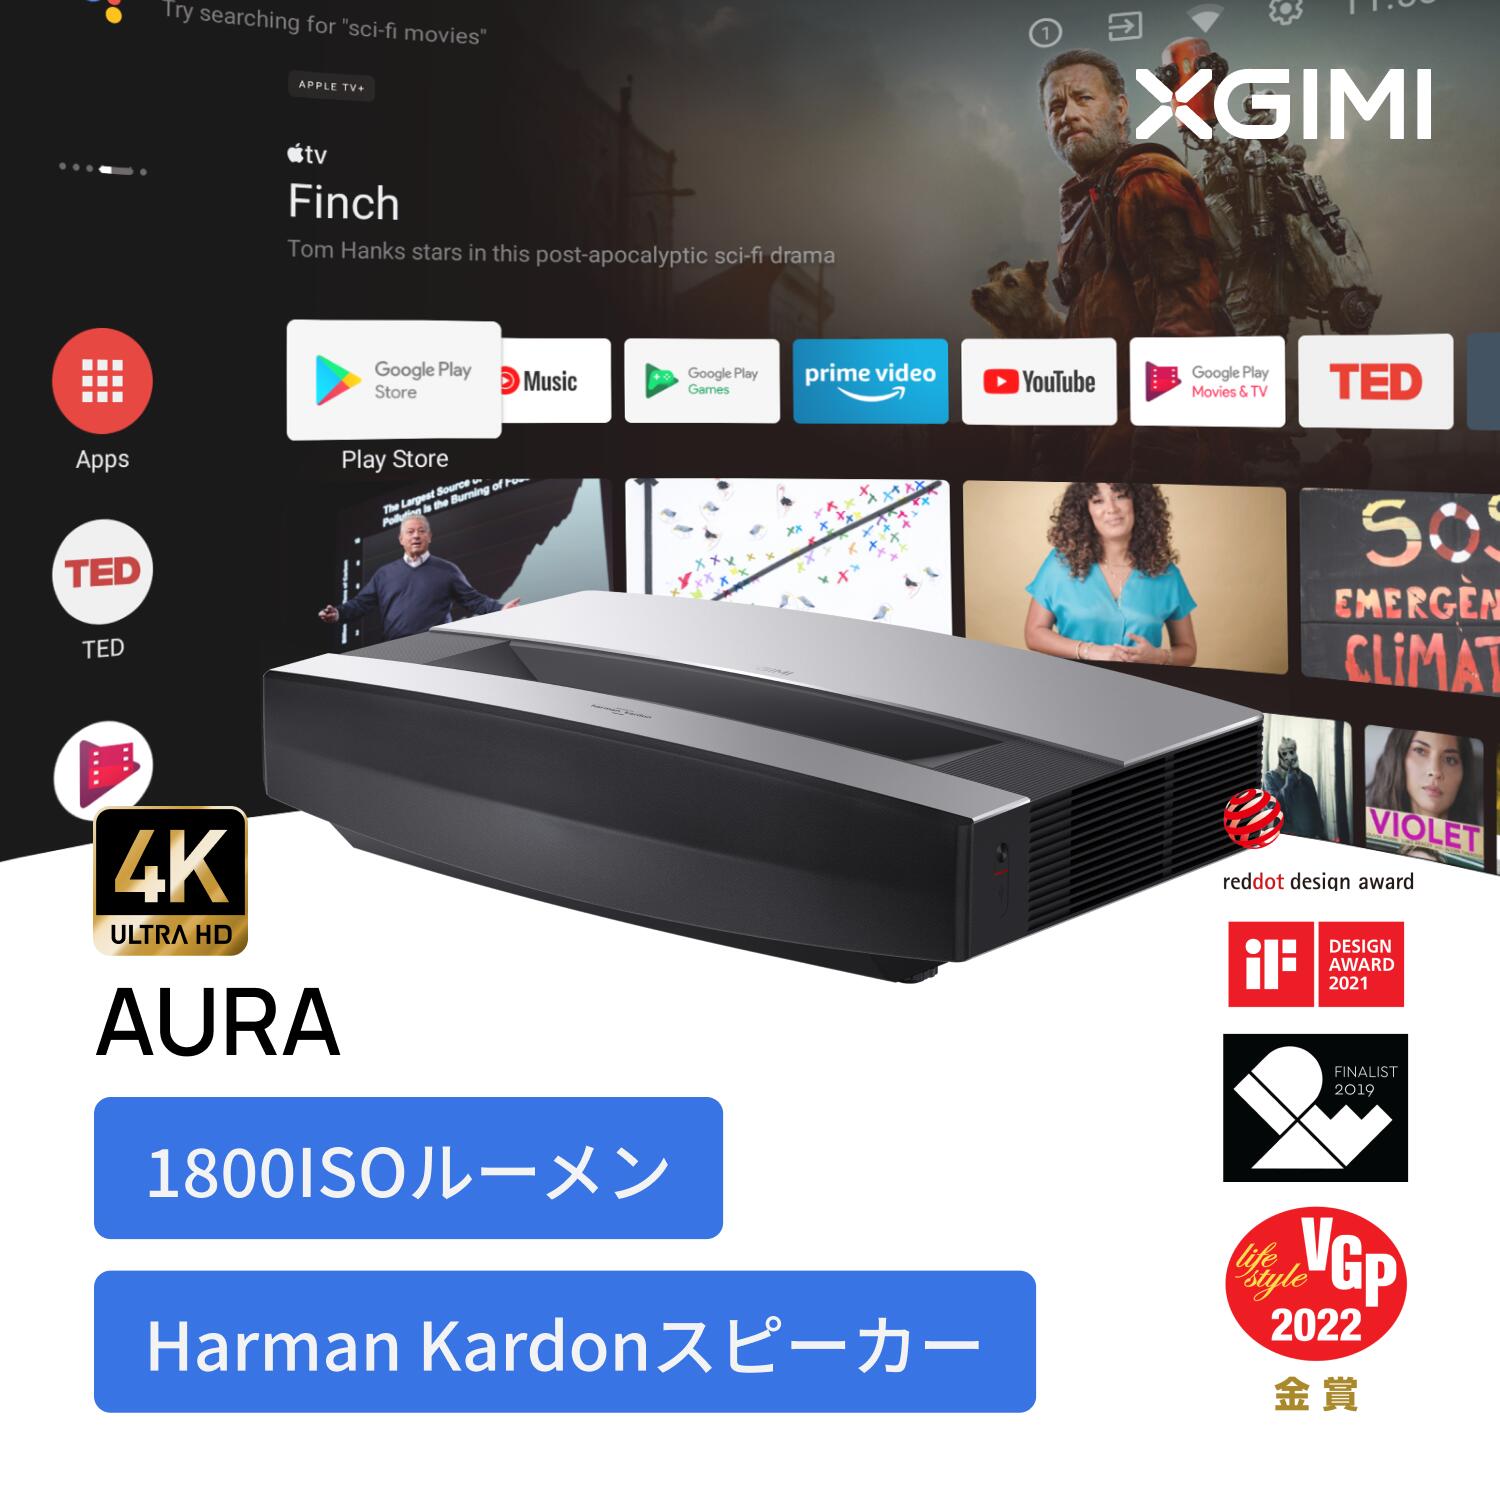 XGIMI AURA 超短焦点 レーザープロジェクター 【4K ULTRA HD画質 / / Harman Kardonスピーカー / Android TV 10.0搭載 / 壁面から20cmの投影距離で100インチの大画面】